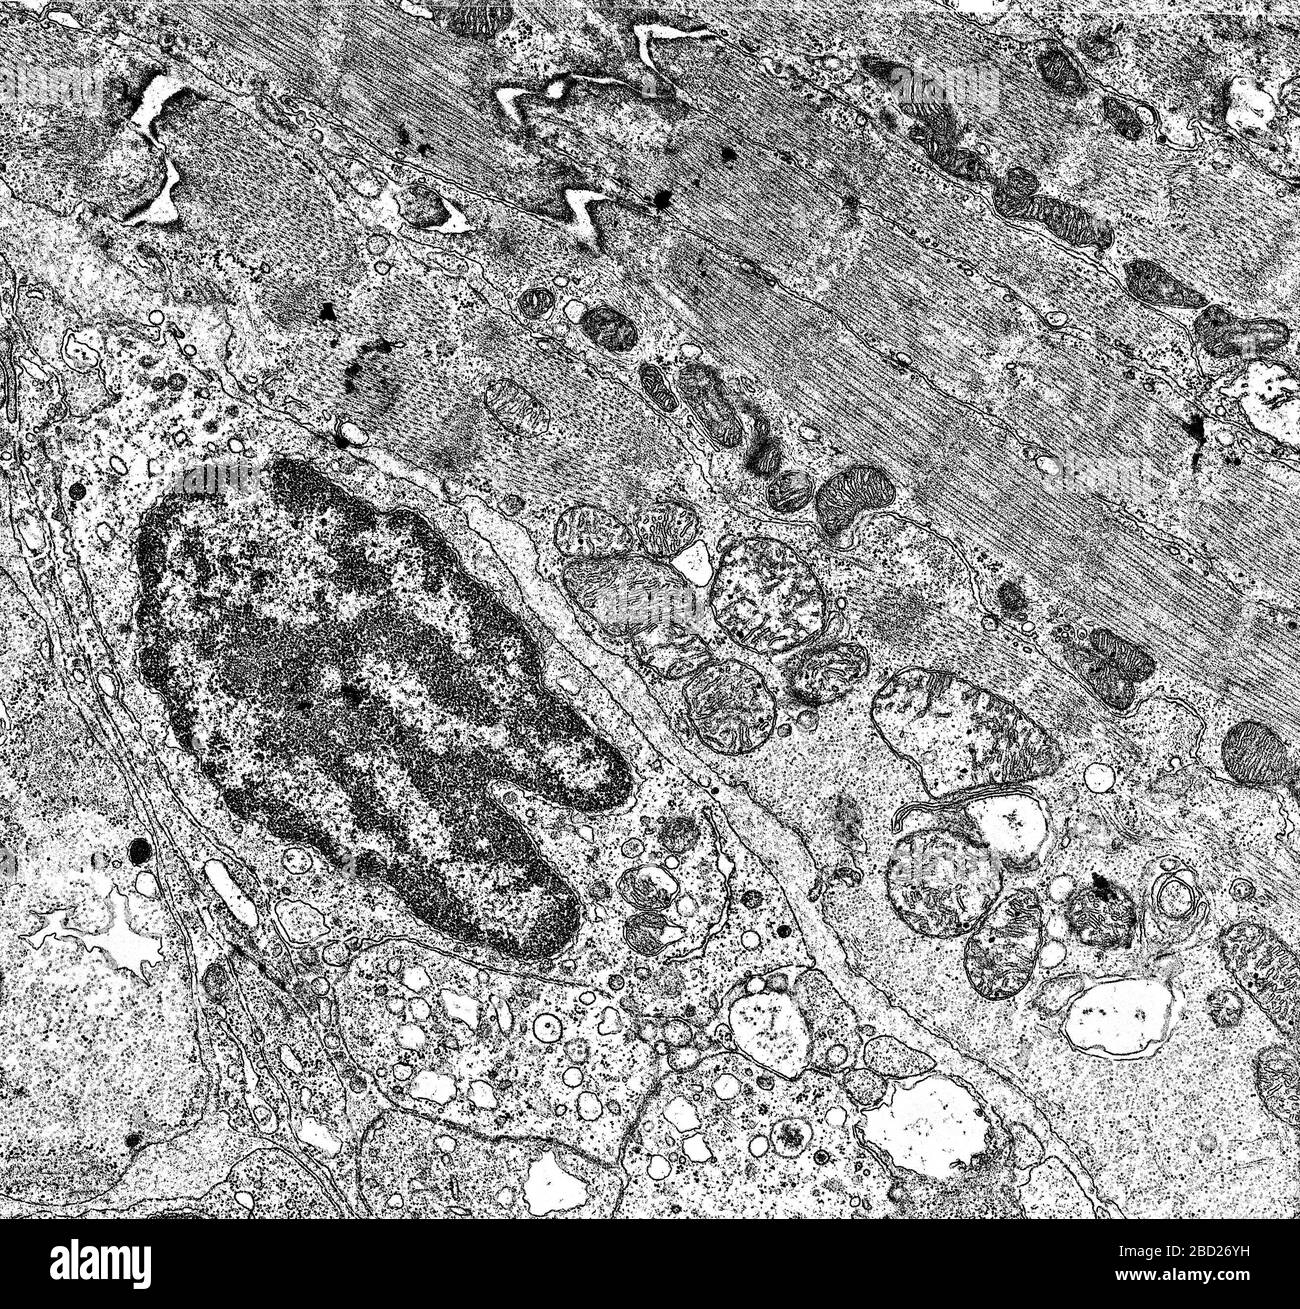 Núcleo celular y organelos bajo el microscopio electrónico 50,000x Foto de stock